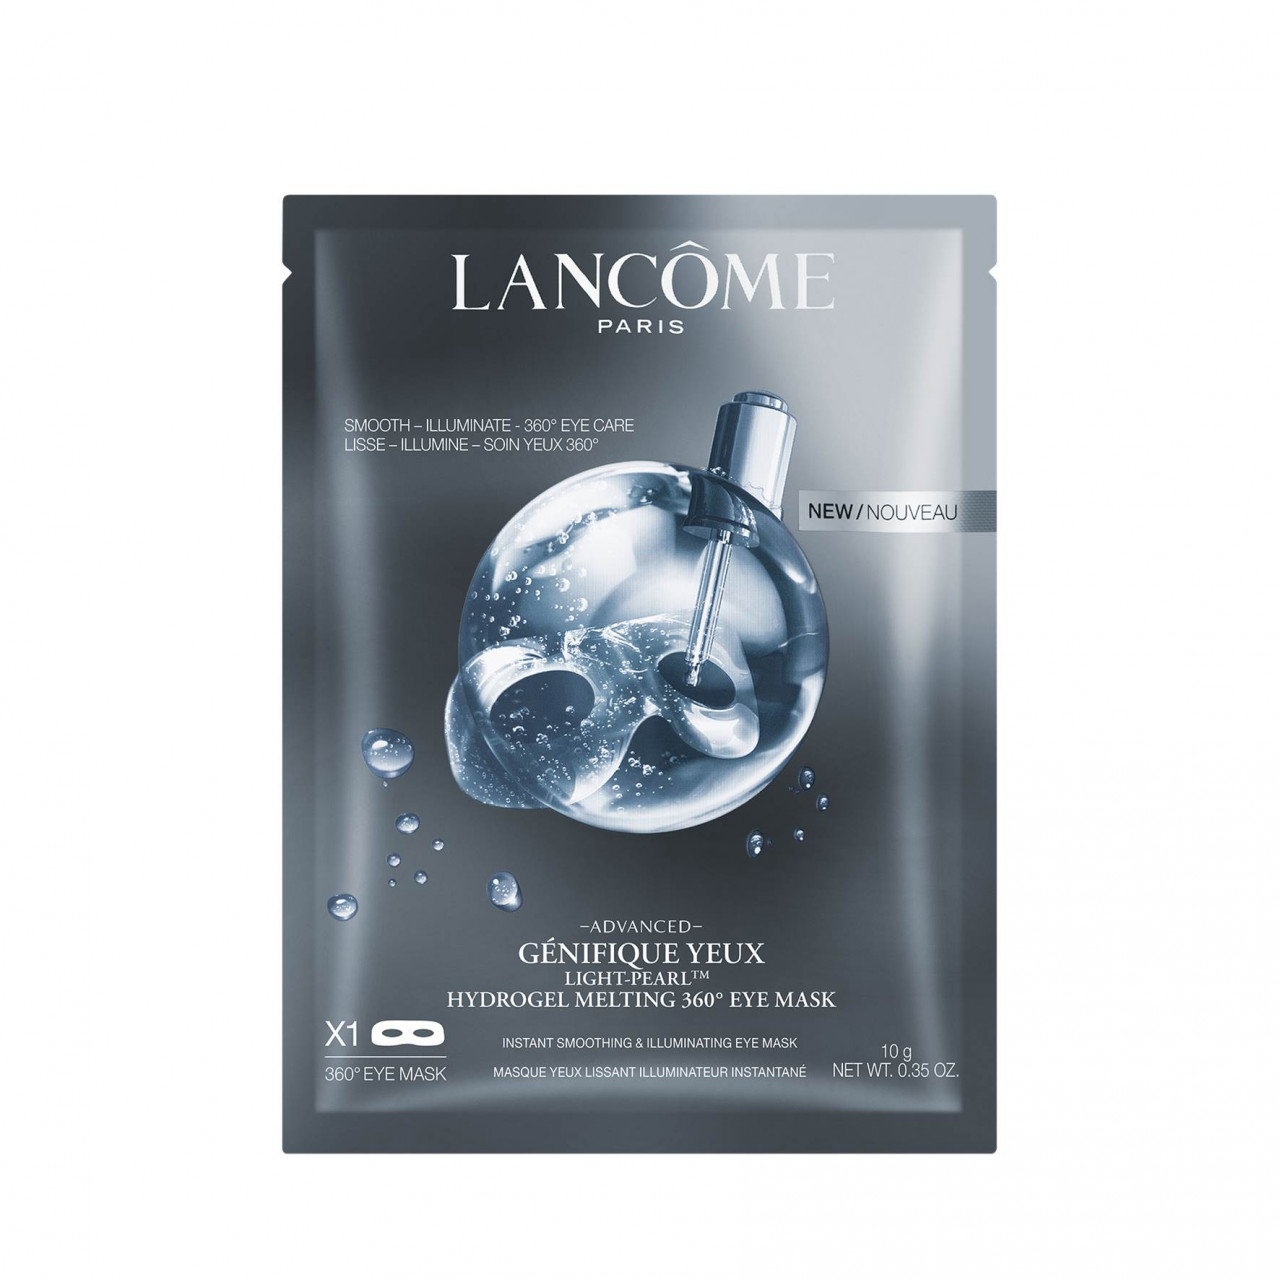 Lancôme - Genifiqué 360 Eye Mask X1 - 